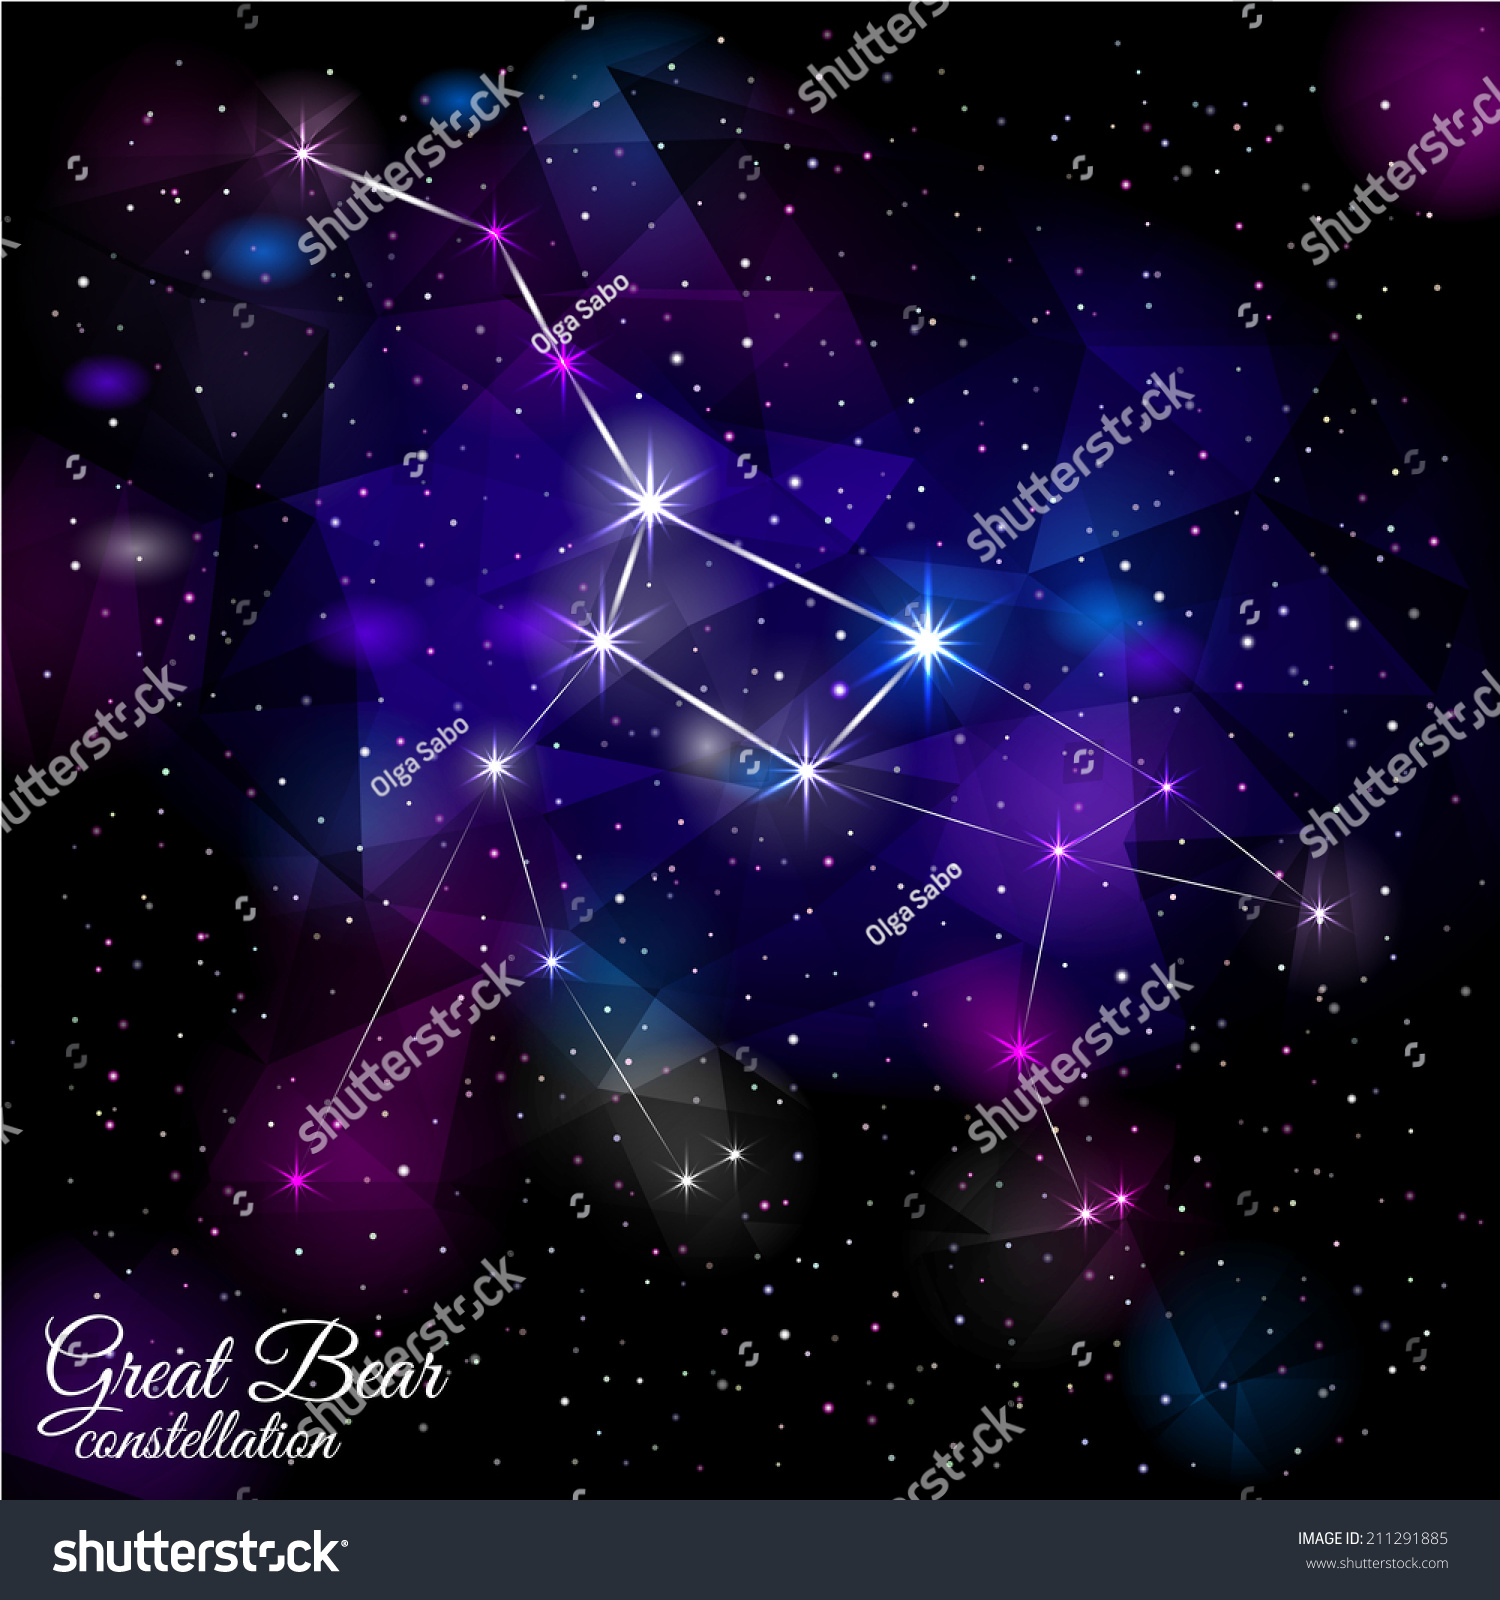 Great Bear Constellation True Star Nebulosity Stock Vector 211291885 ...